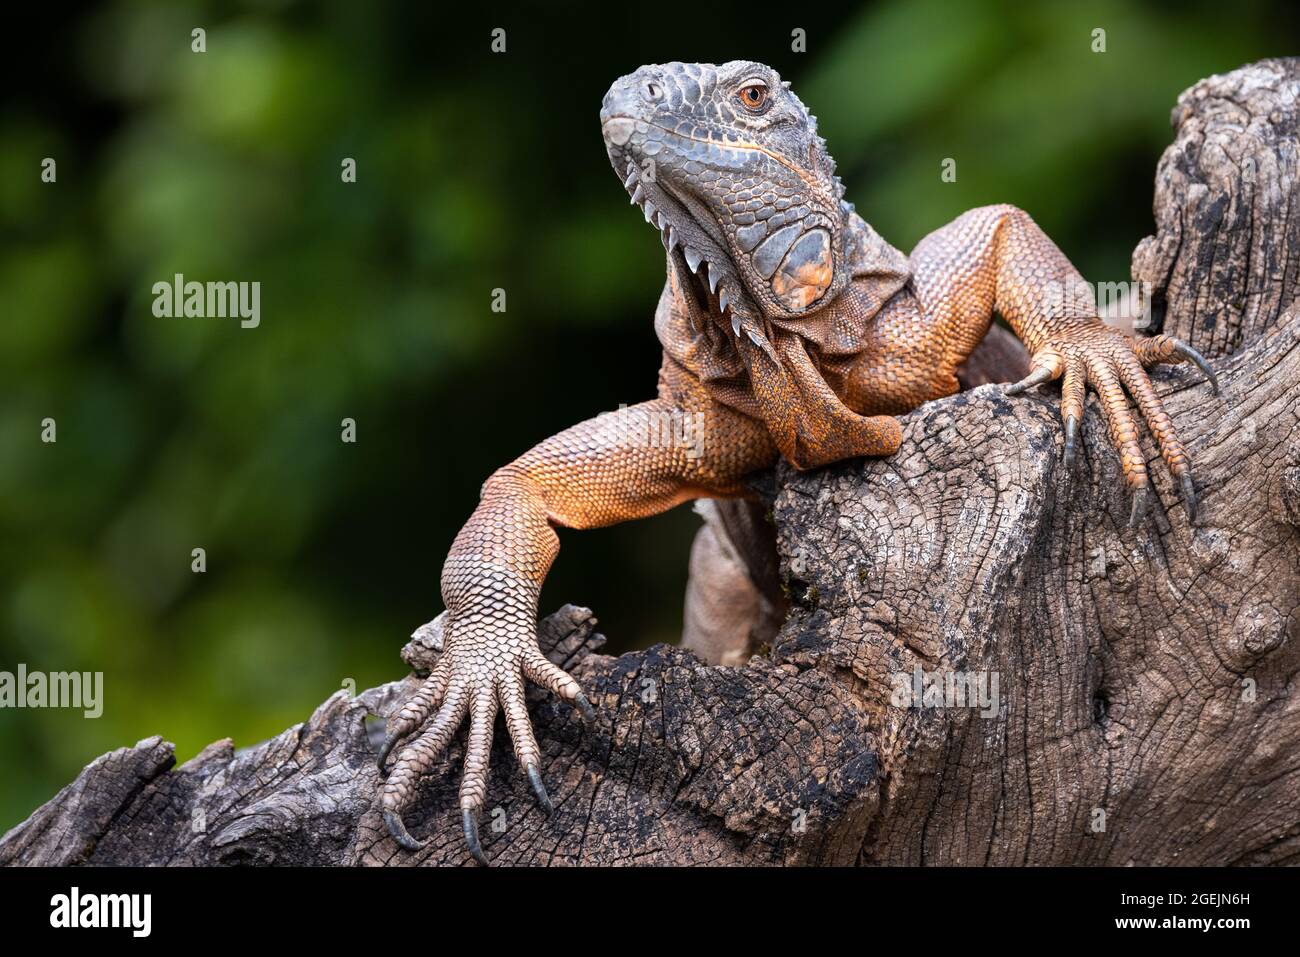 Primo piano ritratto anteriore di un'iguana verde con pelle arancione che sale su un tronco di albero Foto Stock